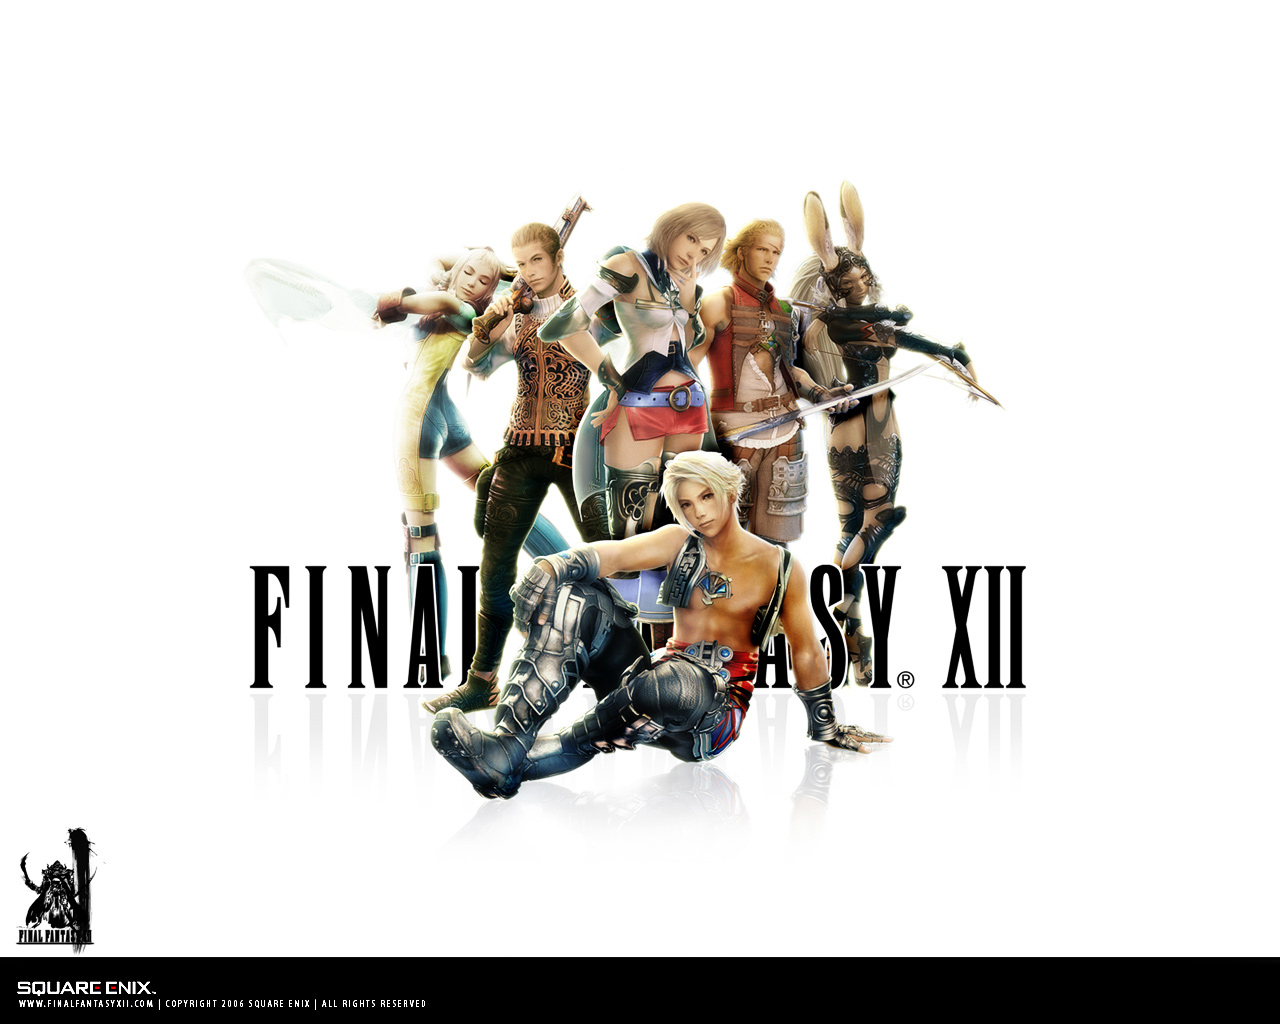 Fond d'ecran Final Fantasy XII personnages